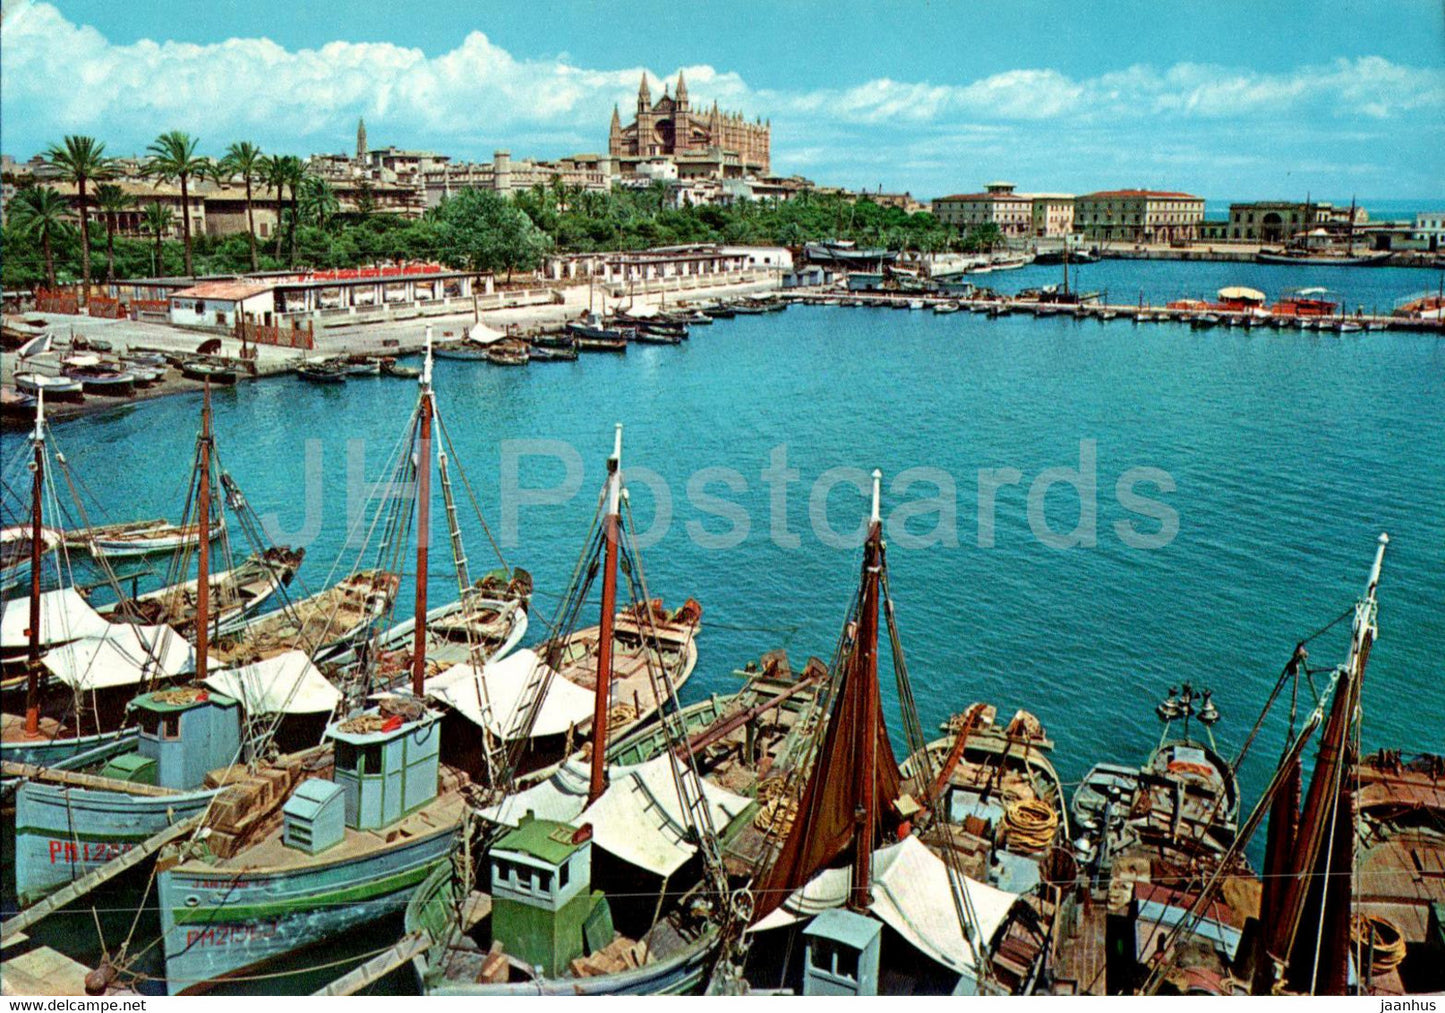 Palma - La Catedral y La Lonja desde el muelle de pescadores - fishing ship - boat - Mallorca - 1003 - Spain - used - JH Postcards